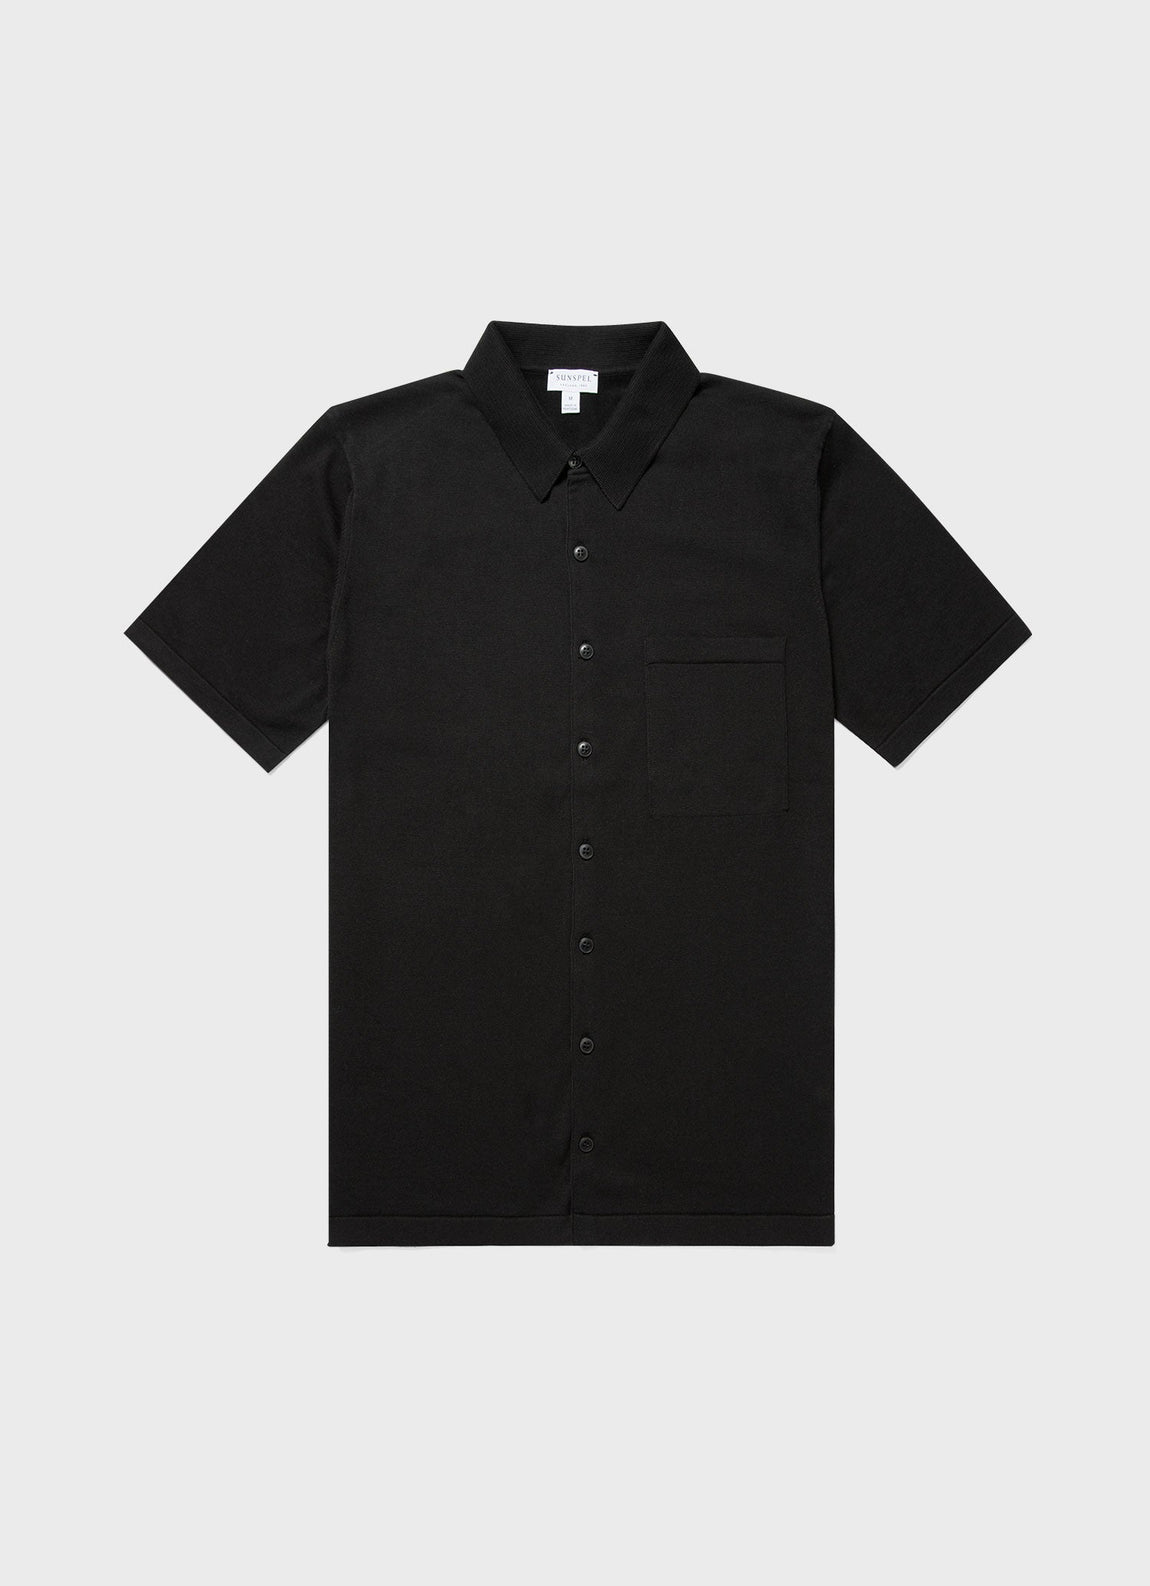 Men's Sea Island Cotton Knit Shirt in Black | Sunspel